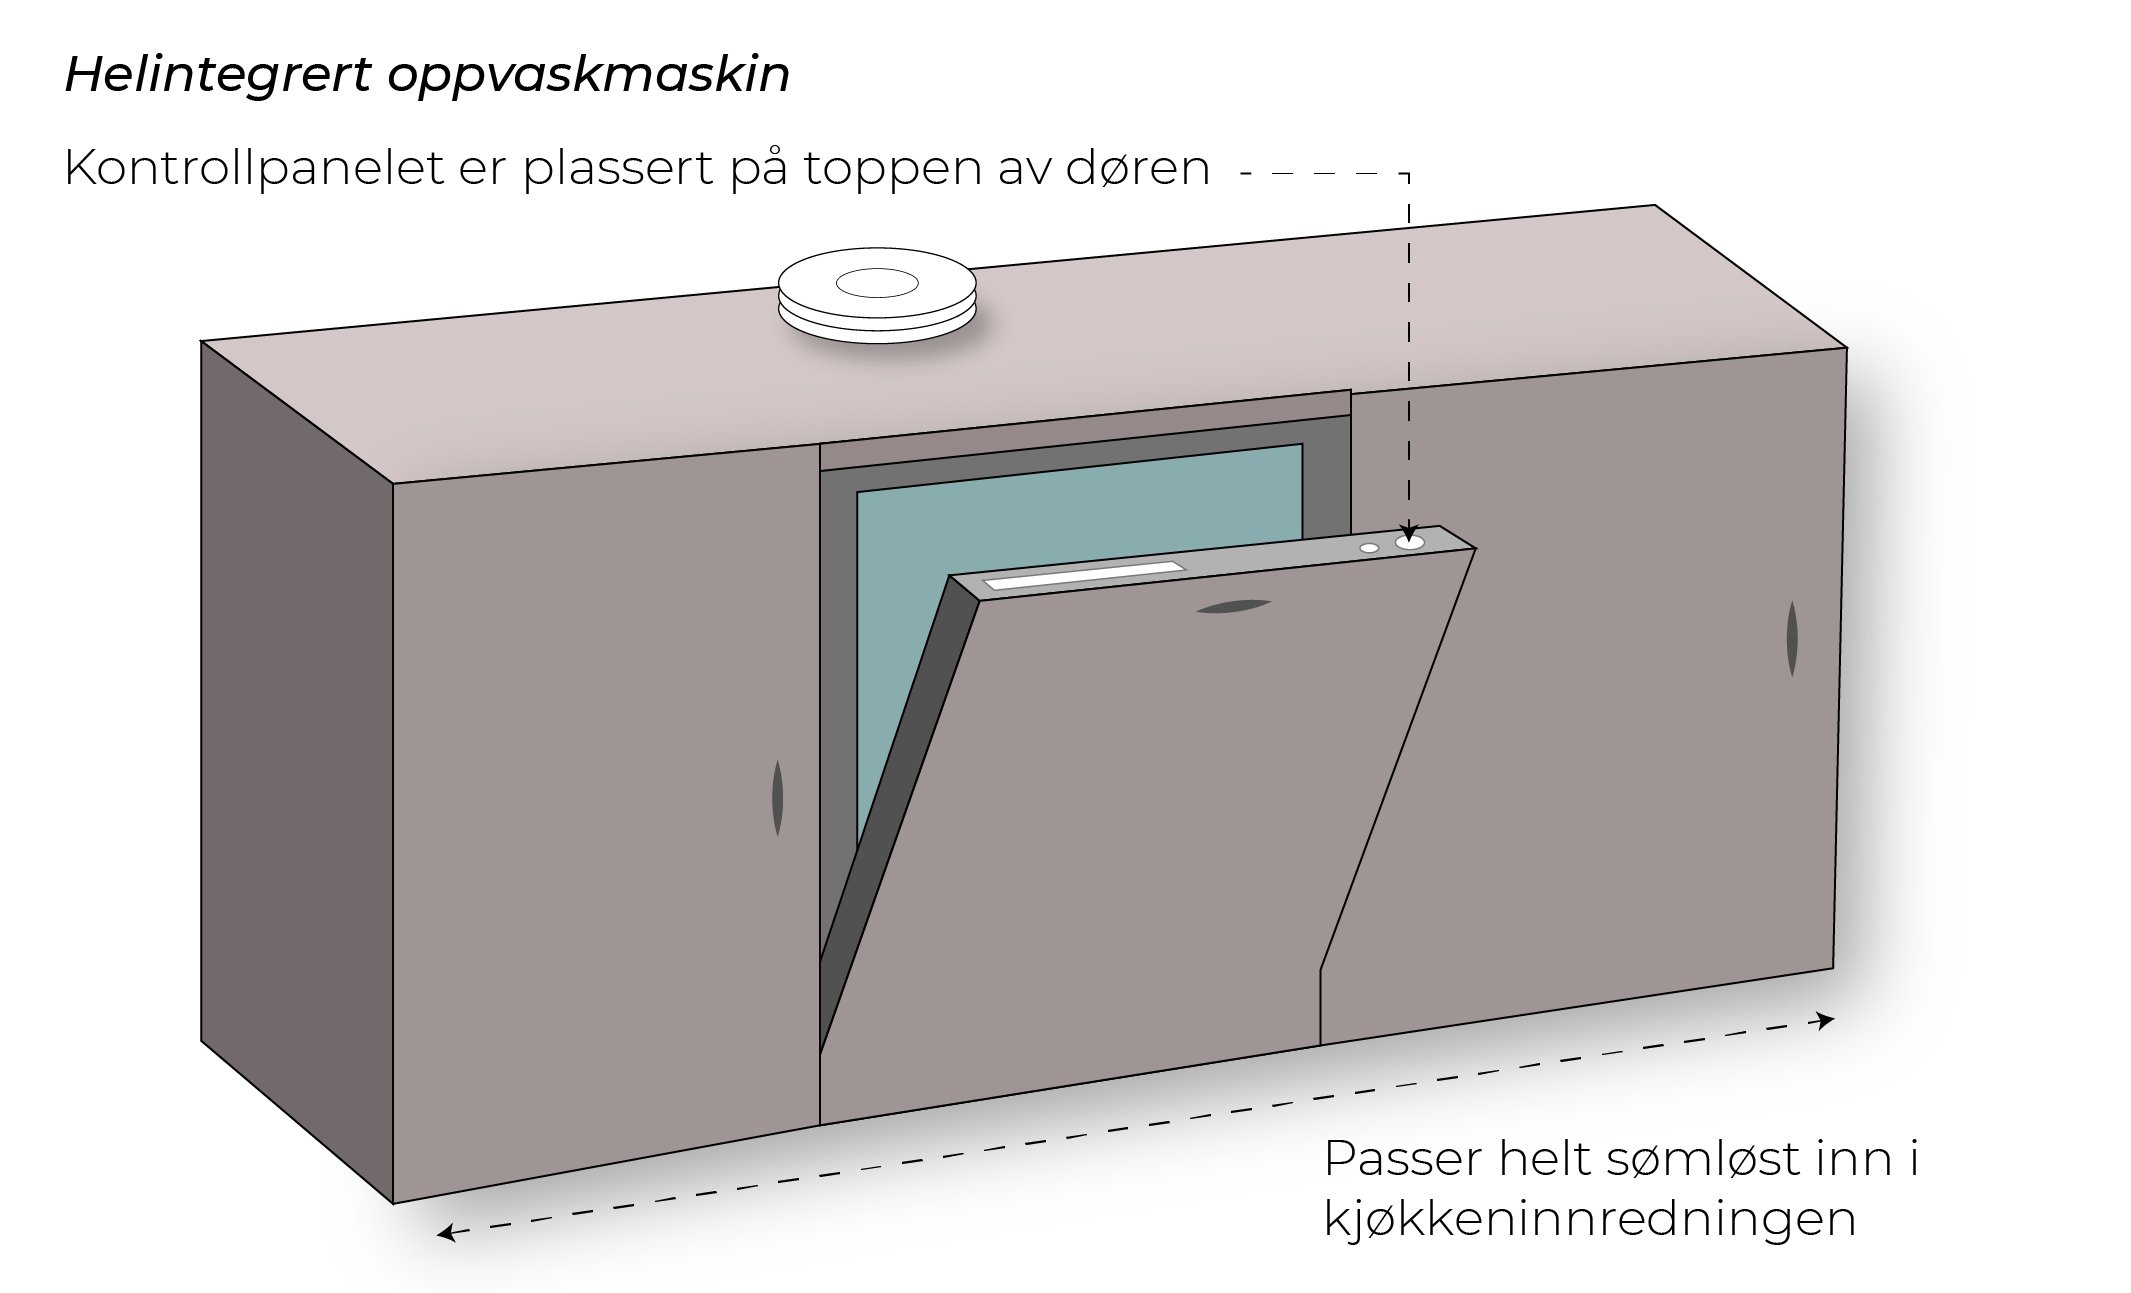 illustrasjon av helintegrert oppvaskmaskin